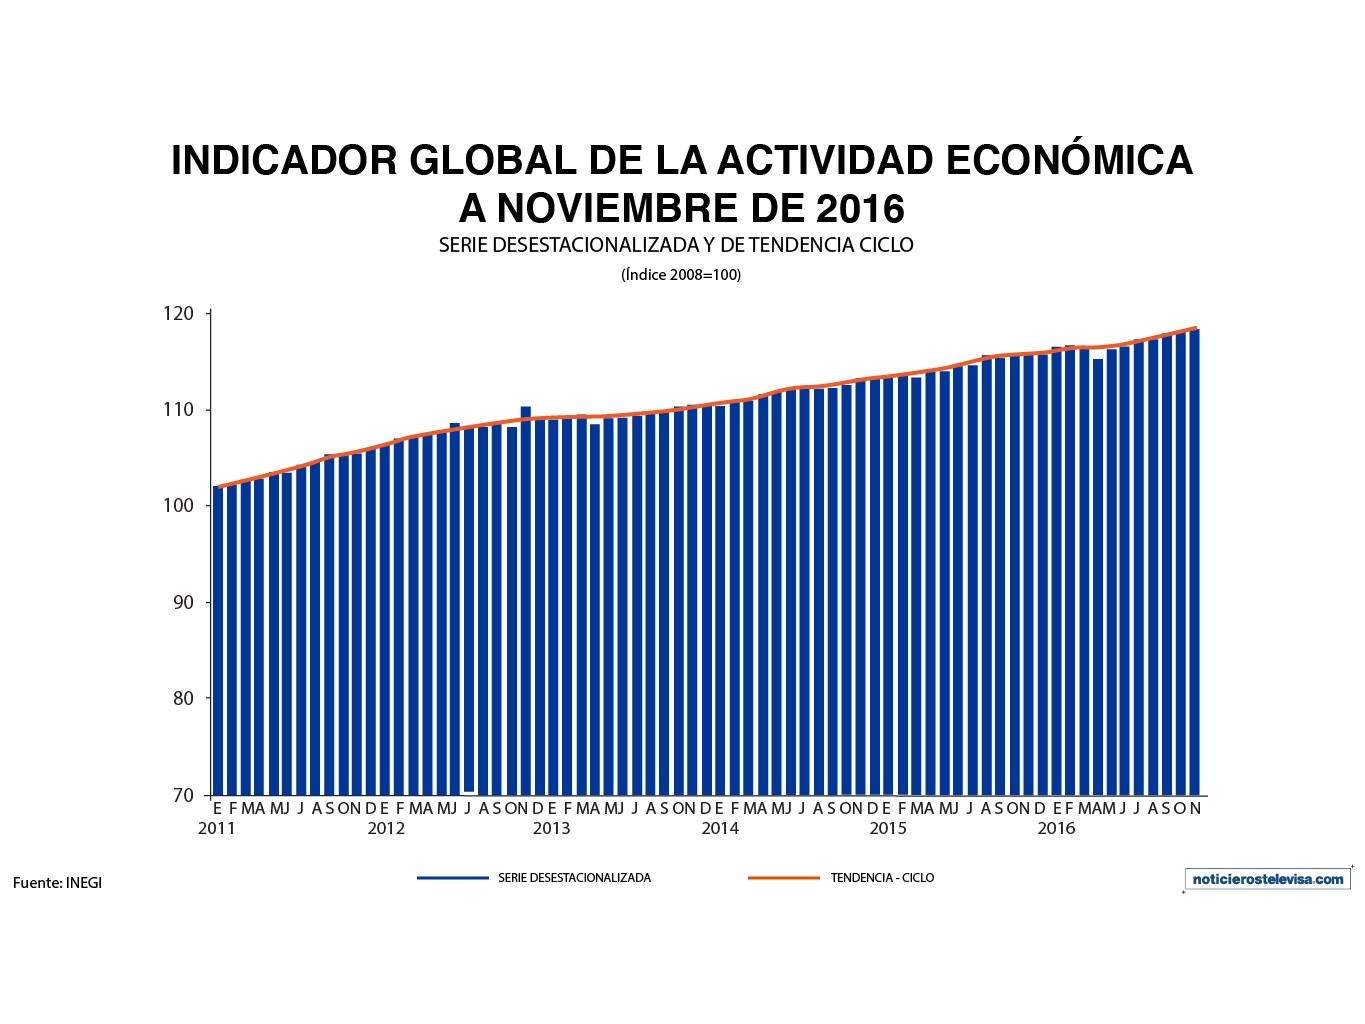 De acuerdo con cifras del INEGI a noviembre de 2016, el Indicador Global de la Actividad Económica creció 2.4% en su comparación anual